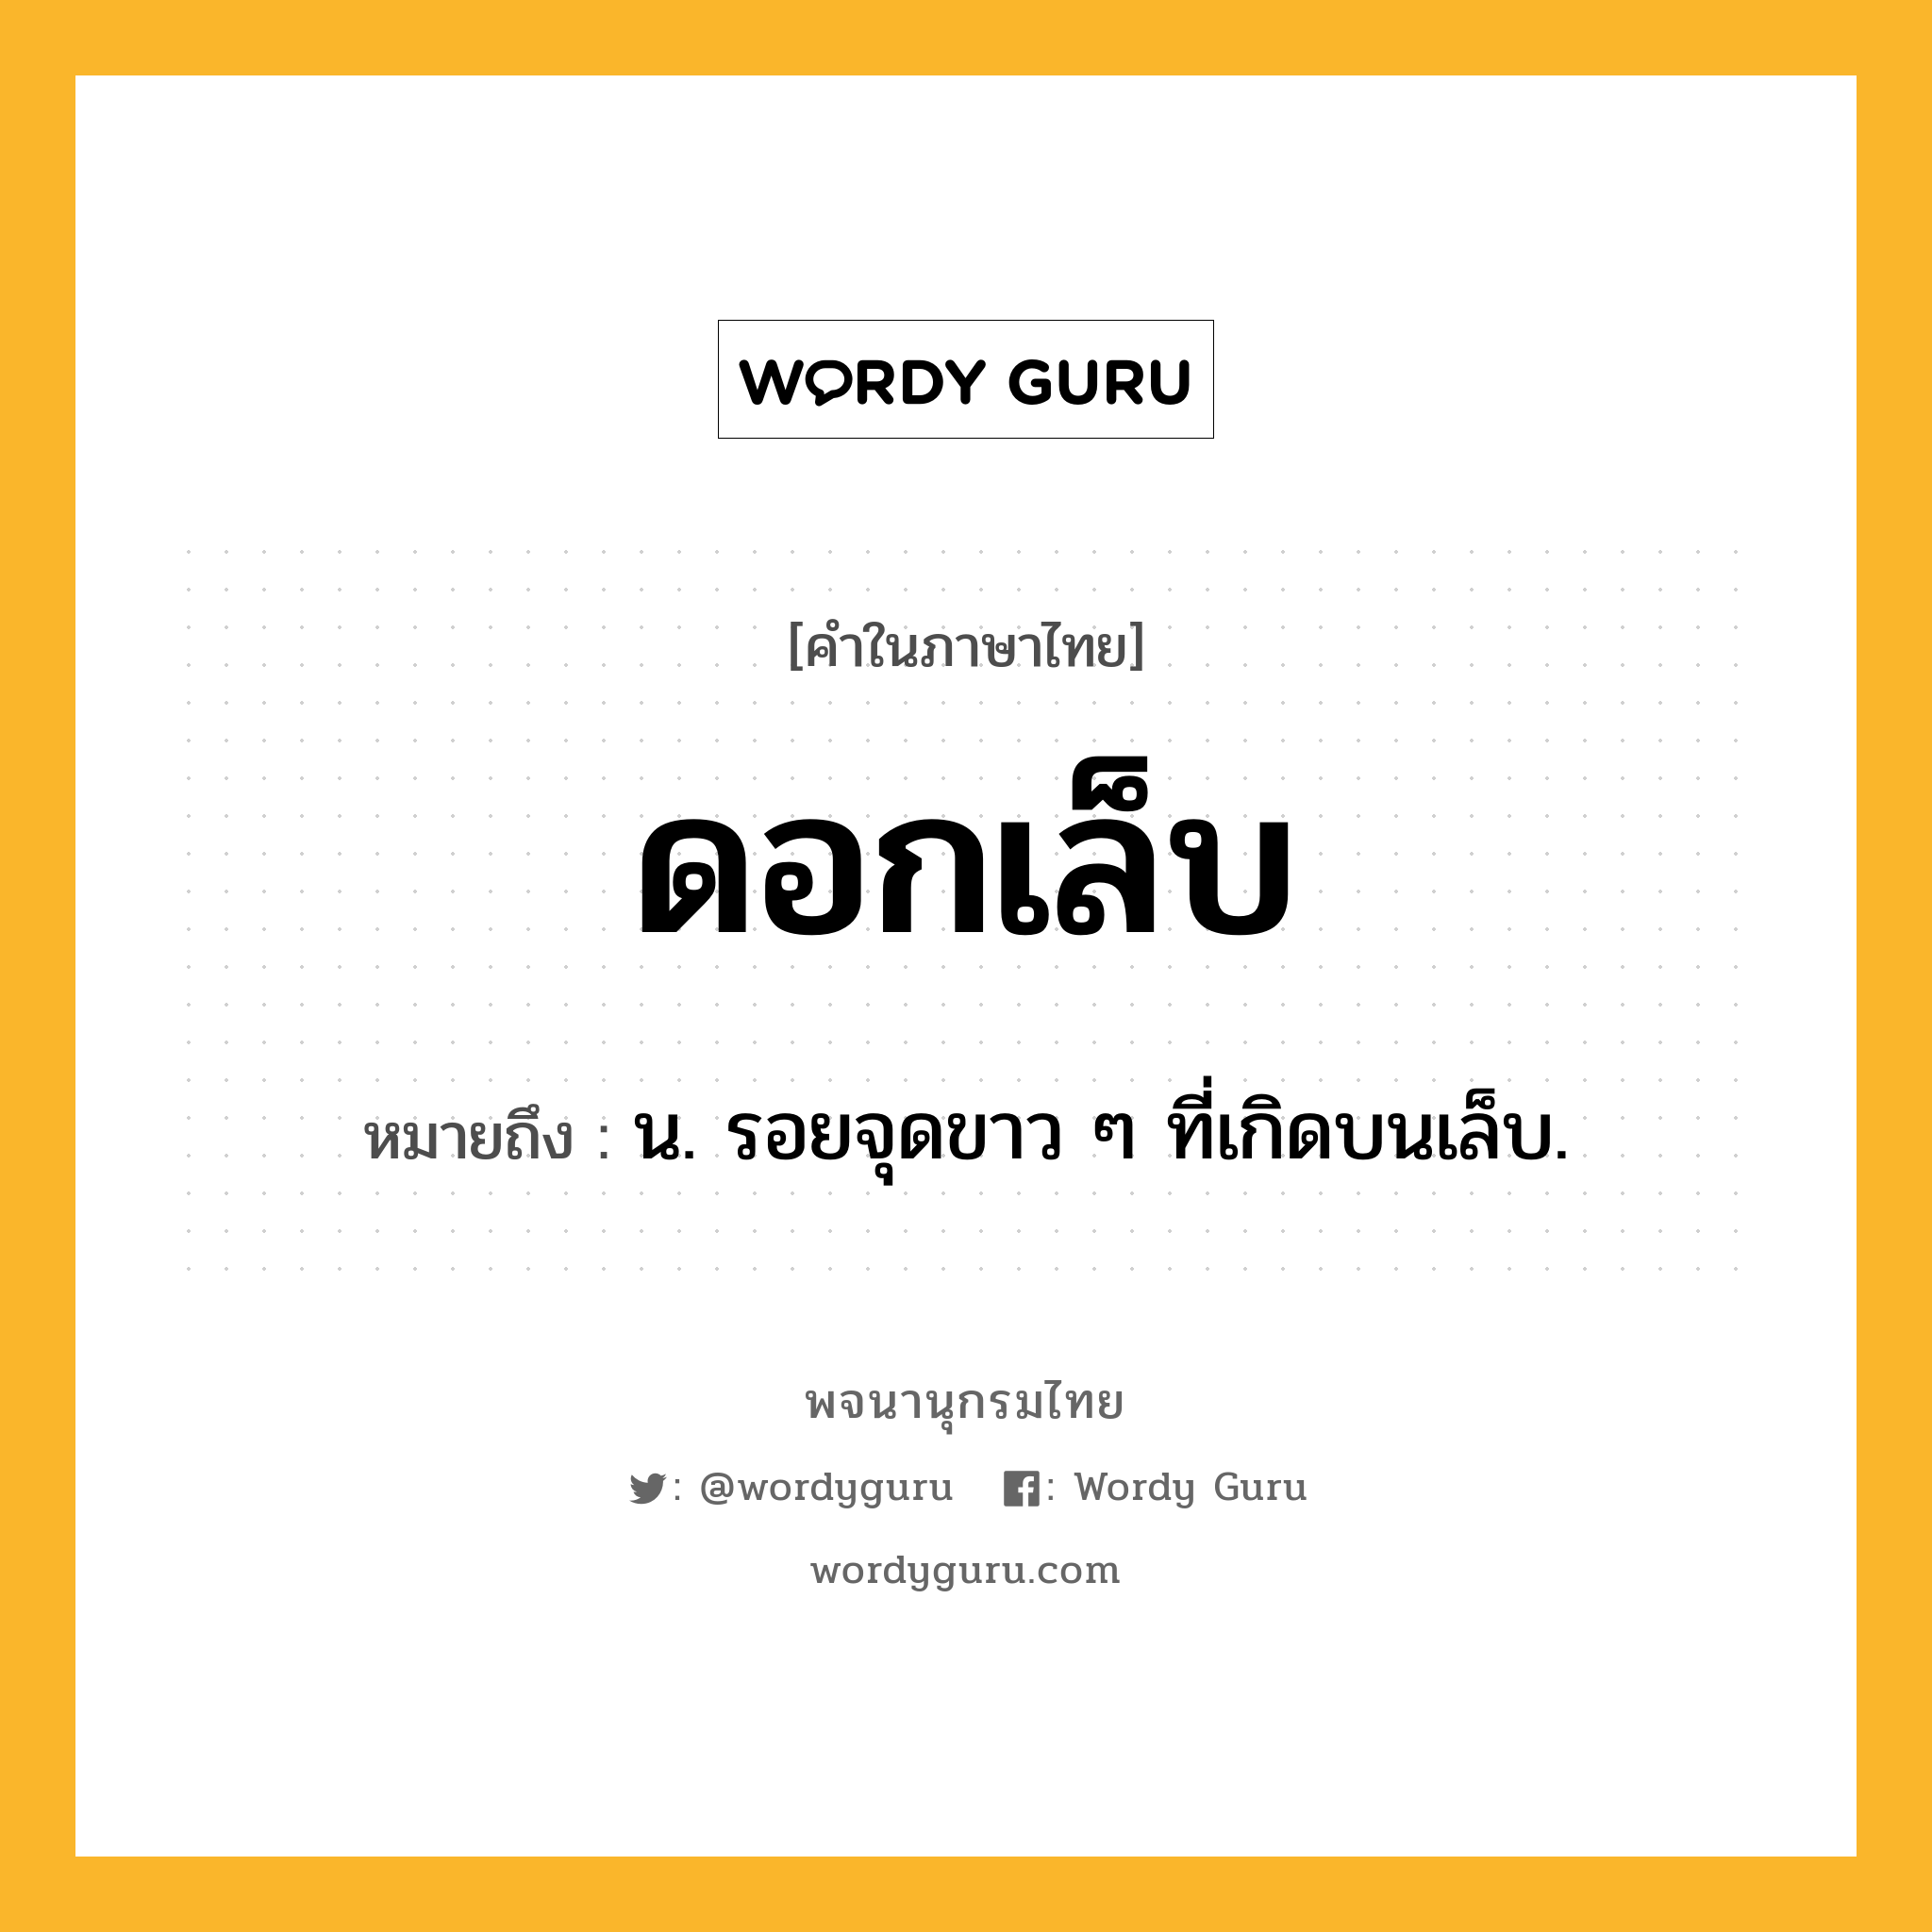 ดอกเล็บ หมายถึงอะไร?, คำในภาษาไทย ดอกเล็บ หมายถึง น. รอยจุดขาว ๆ ที่เกิดบนเล็บ.